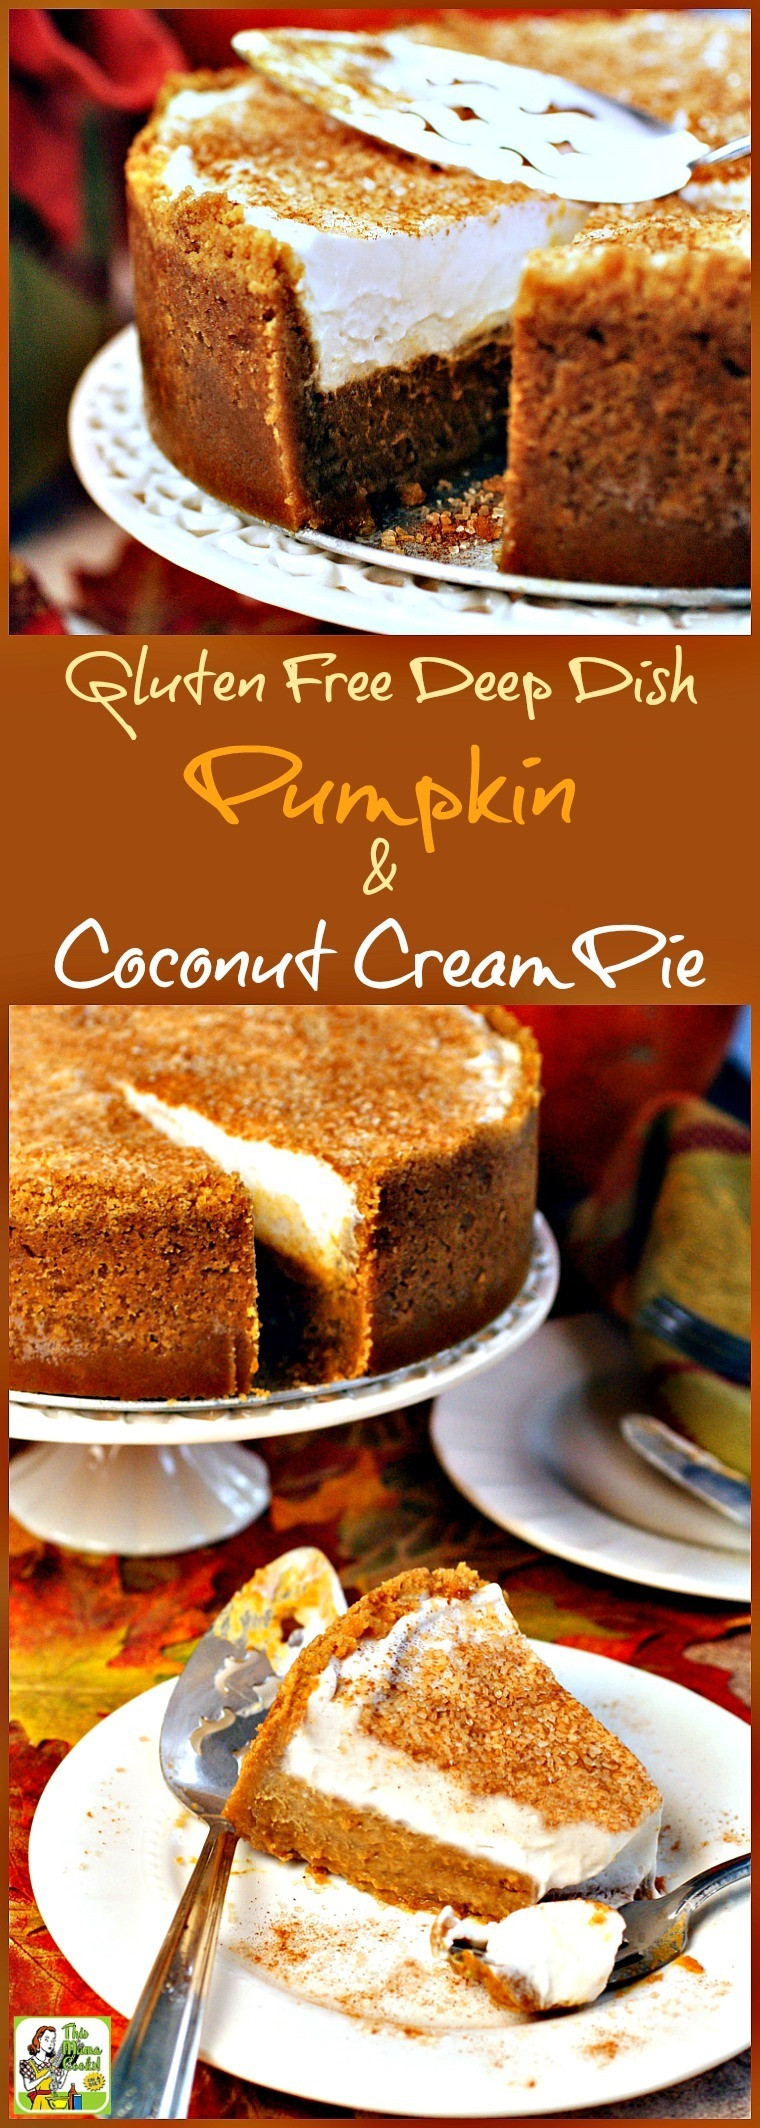 Gluten Free Pumpkin Desserts
 Gluten Free Deep Dish Pumpkin & Coconut Cream Pie